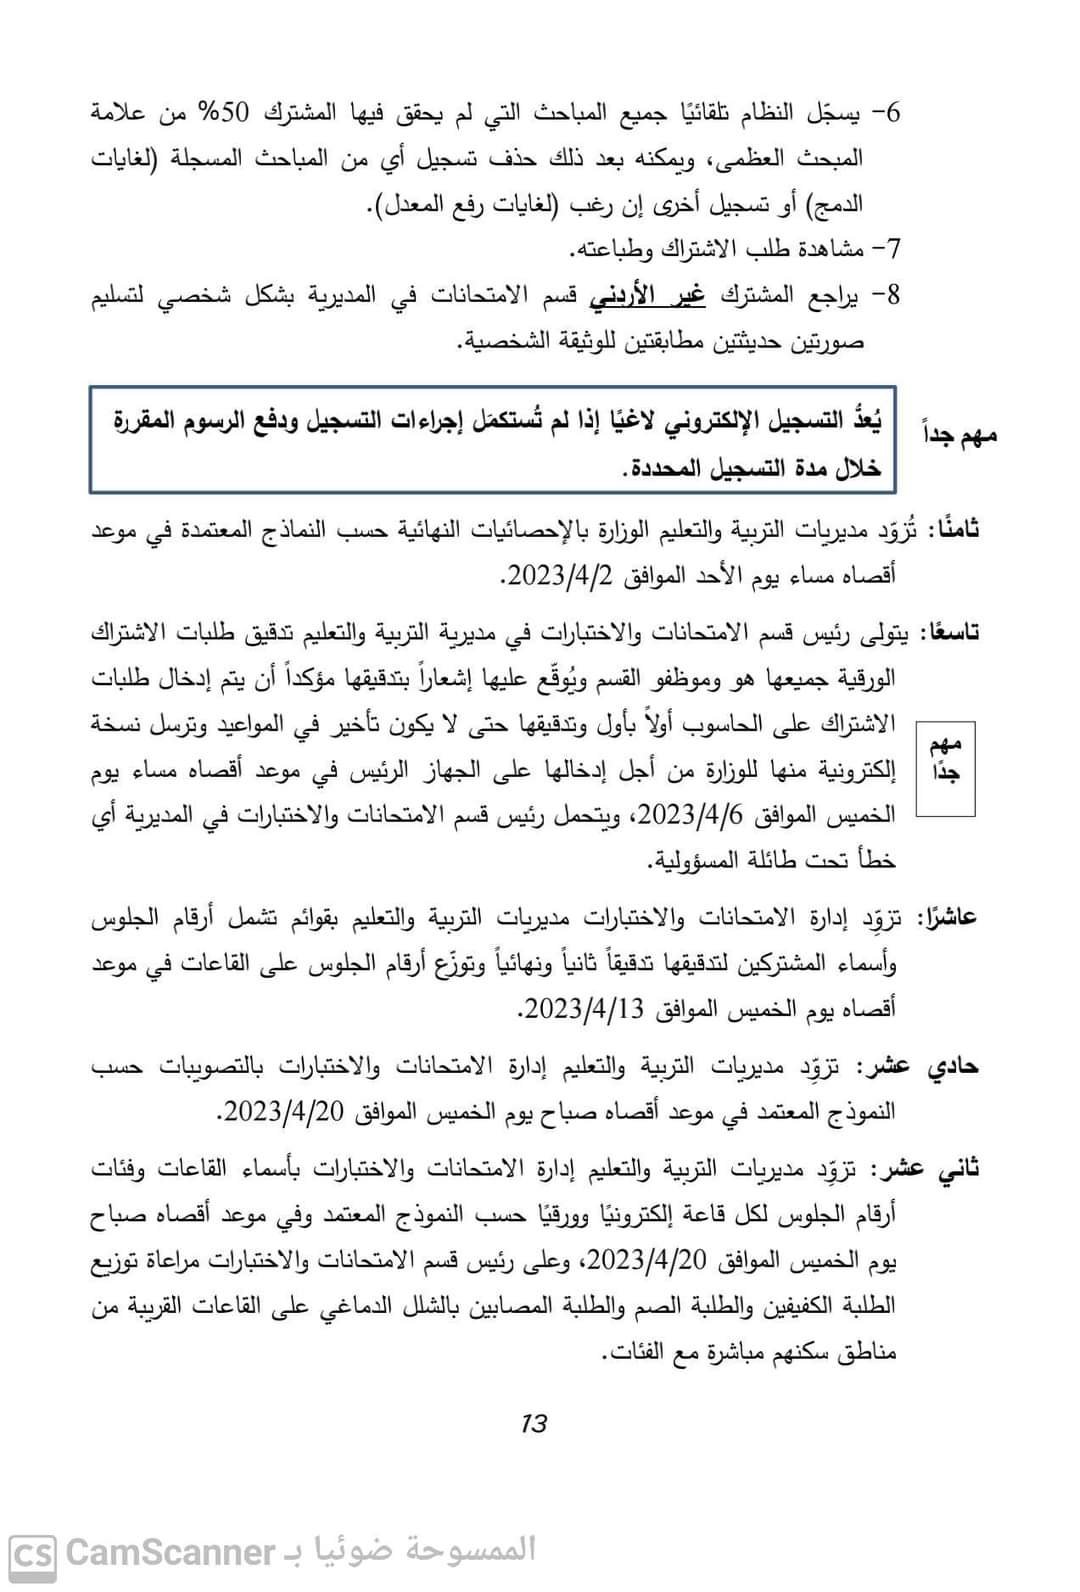 masatalemi|عاجل : تعاميم رسمية عاجلة صادرة من وزارة التربية والتعليم بشأن طلبة التوجيهي لسنة2023